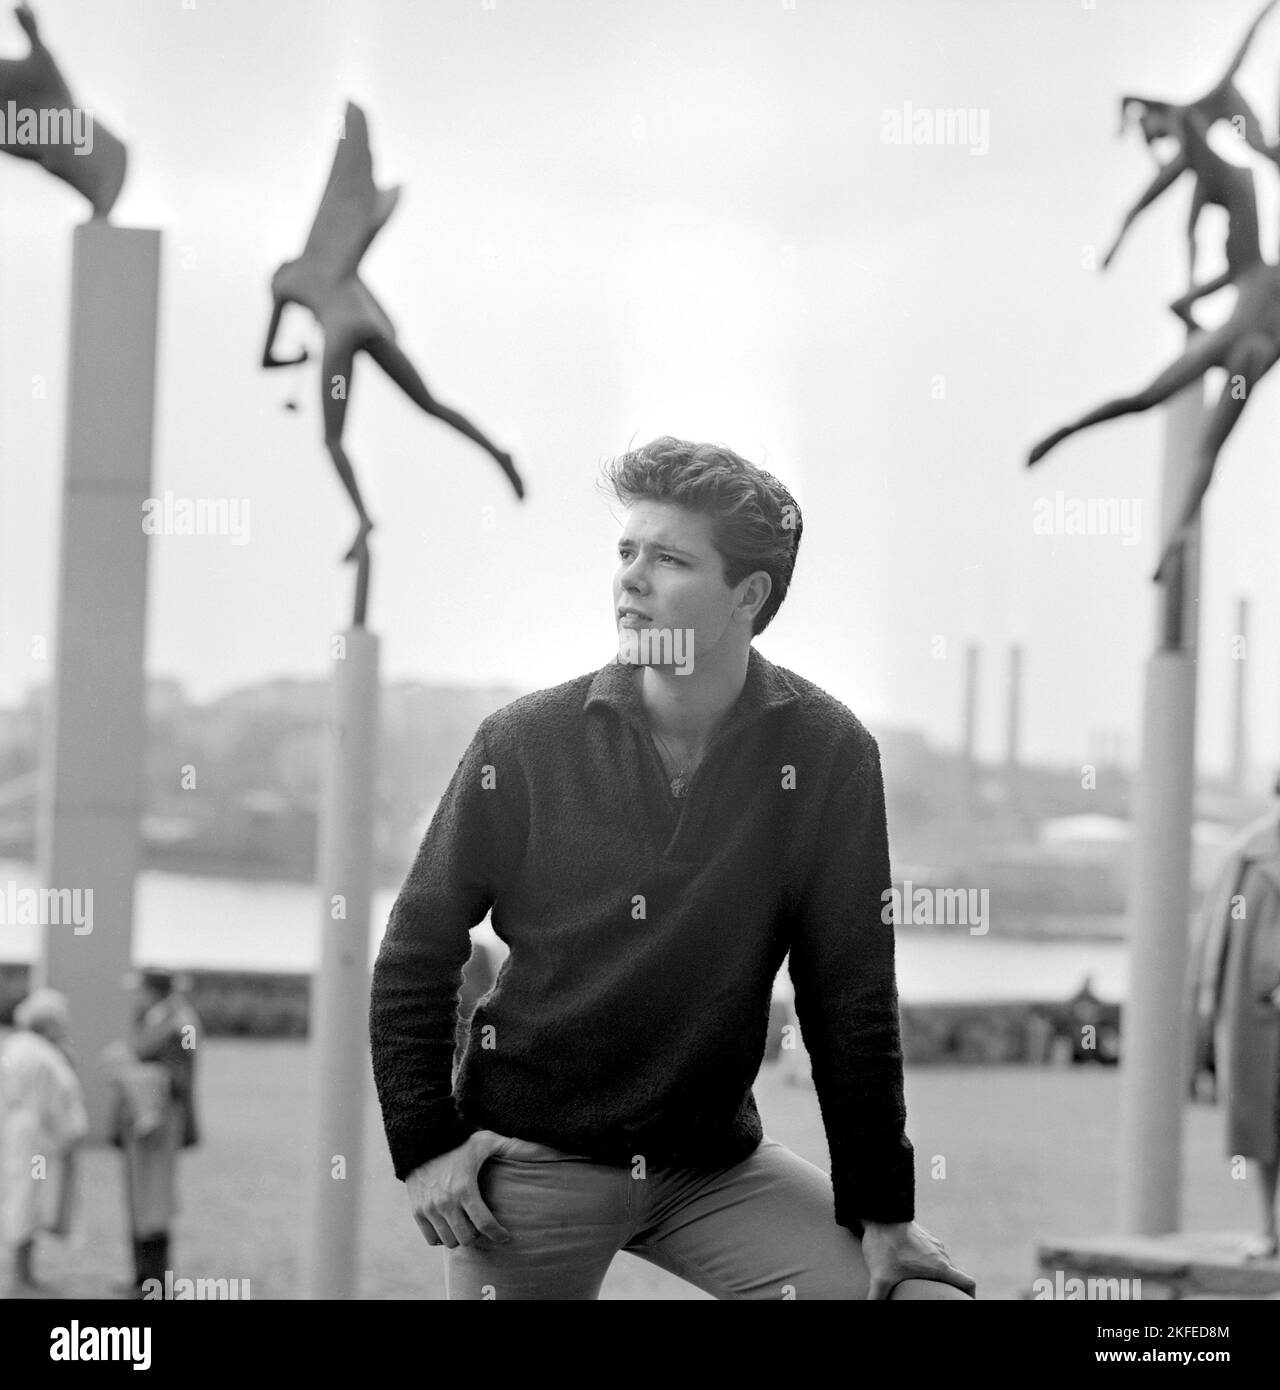 Cliff Richard. Britischer Sänger und Schauspieler. Geboren 1940. Bild 1961 bei einem Besuch in Stockholm, Schweden und Millesgården auf Lidingö. Stockfoto